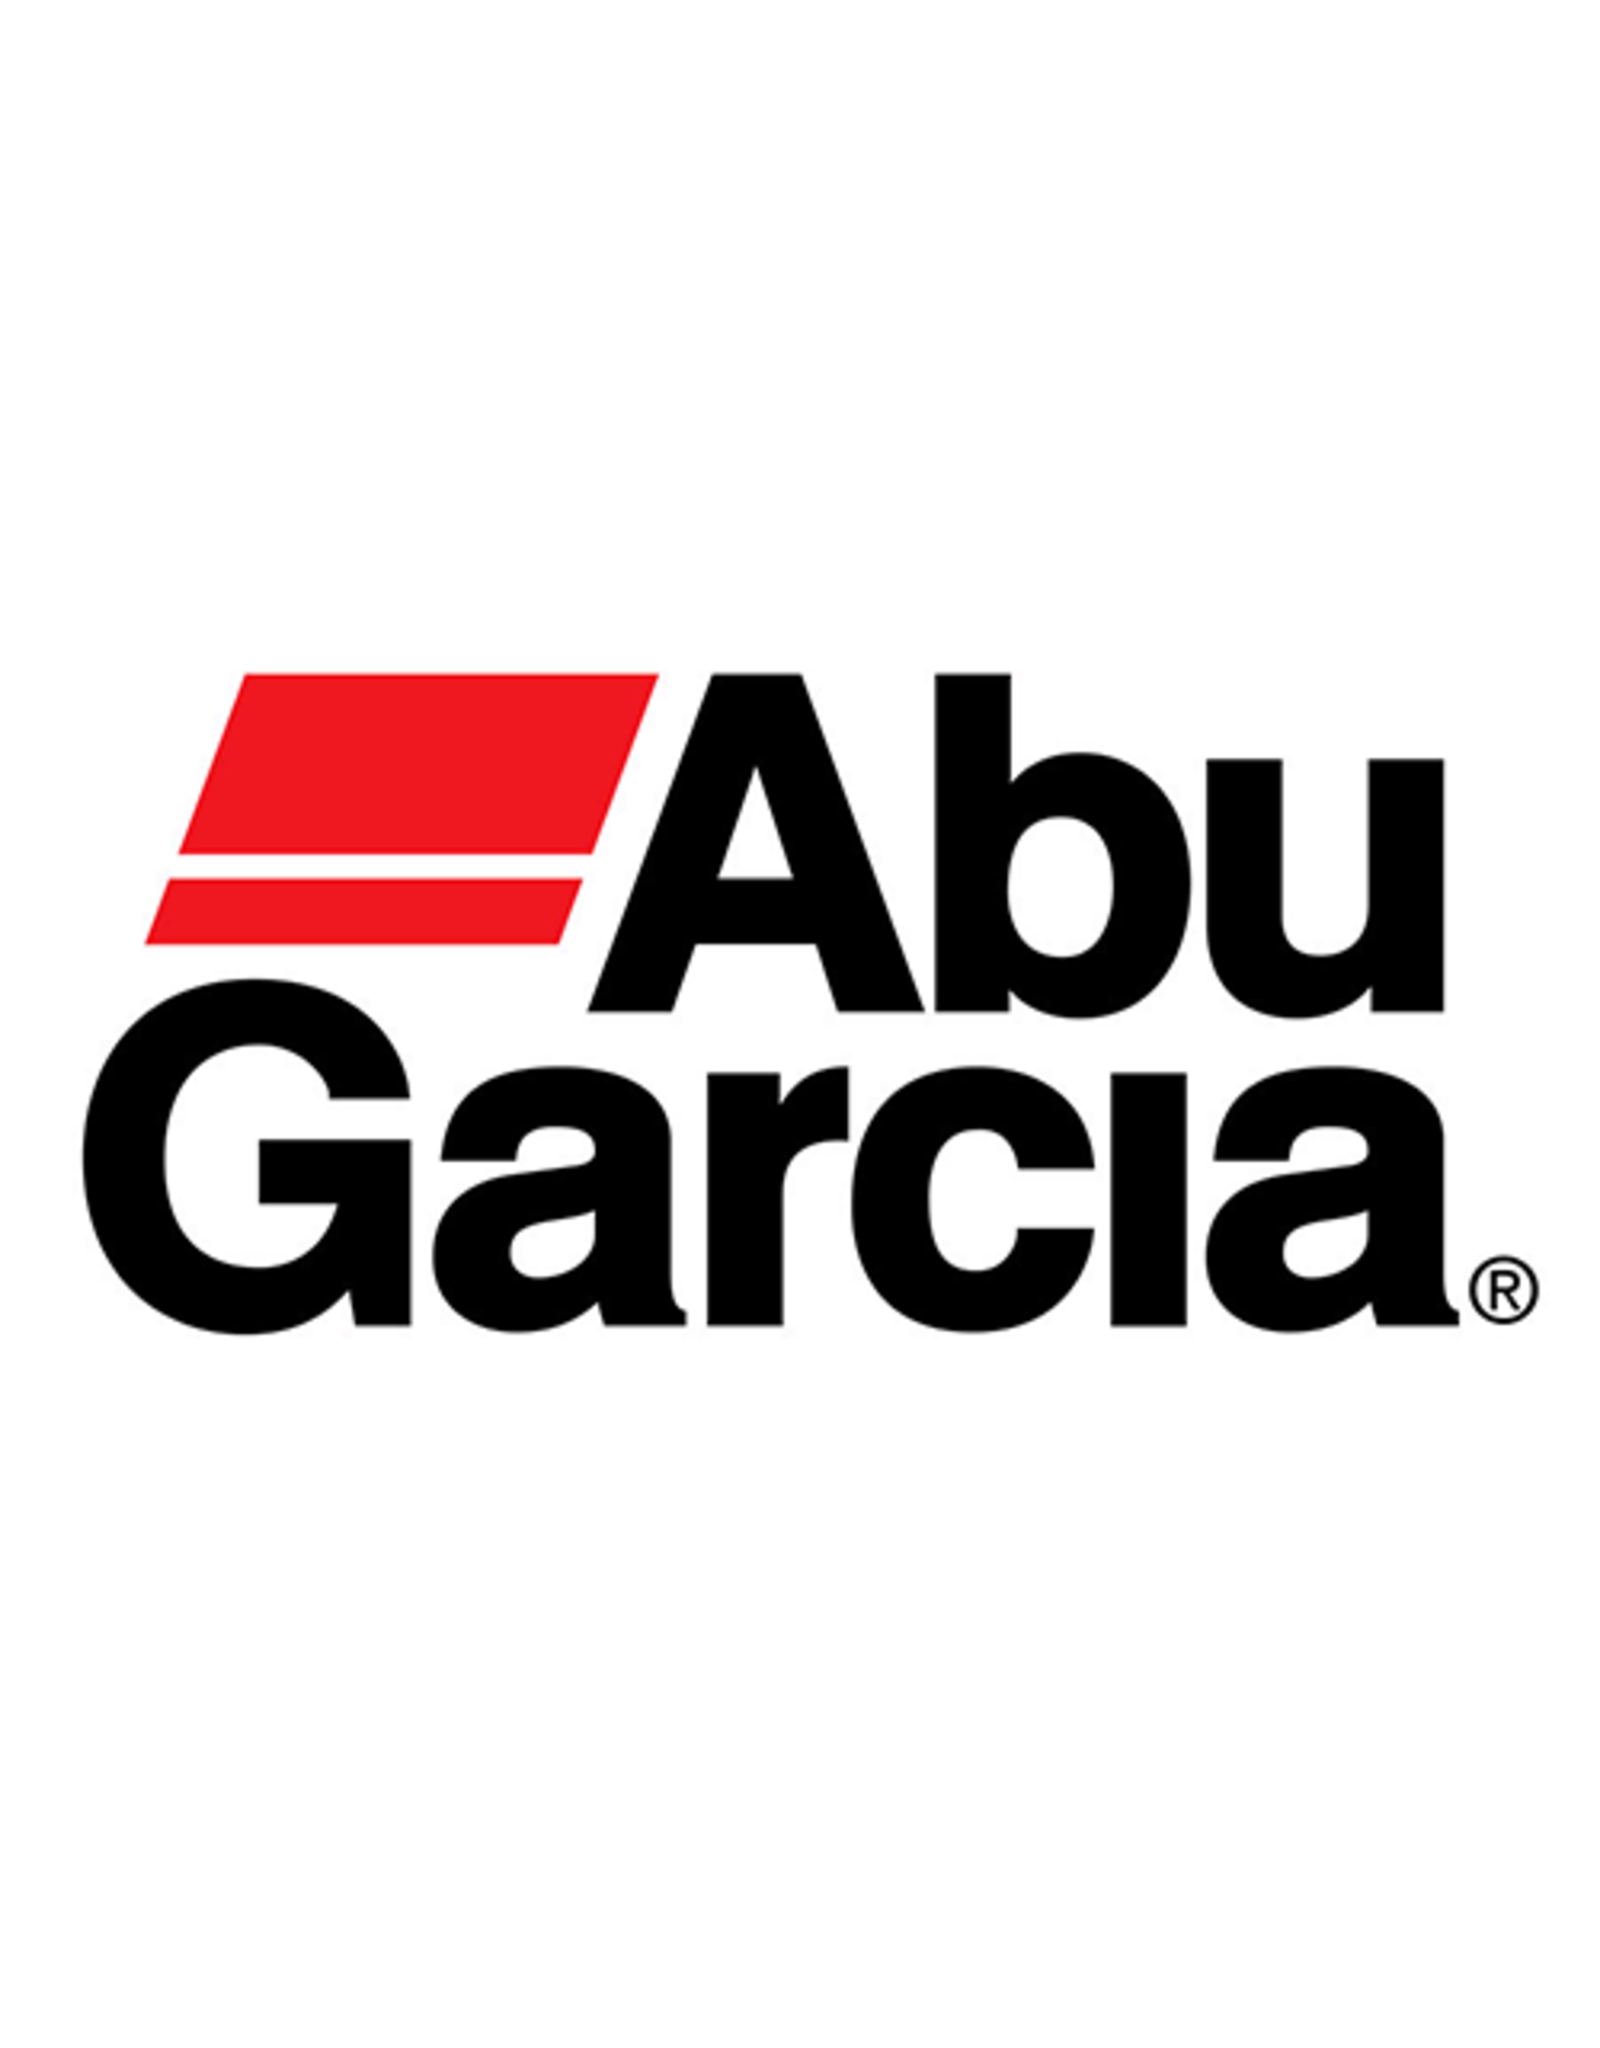 Abu Garcia 2498  LEVEL WIND GUARD